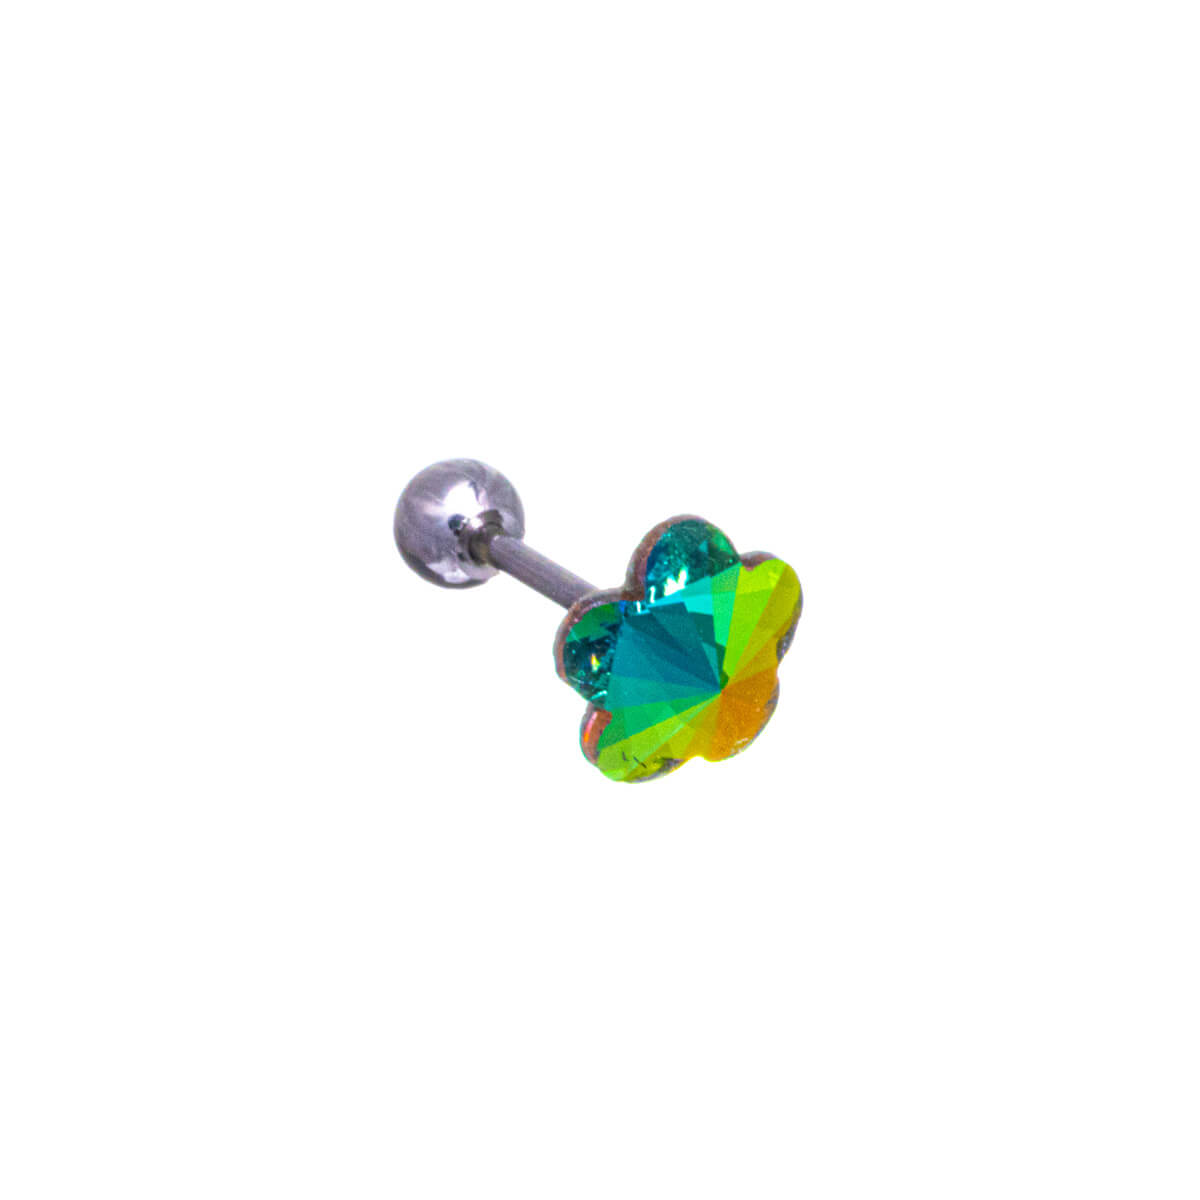 Glass flower corolla necklace 1.2mm (Steel 316L)